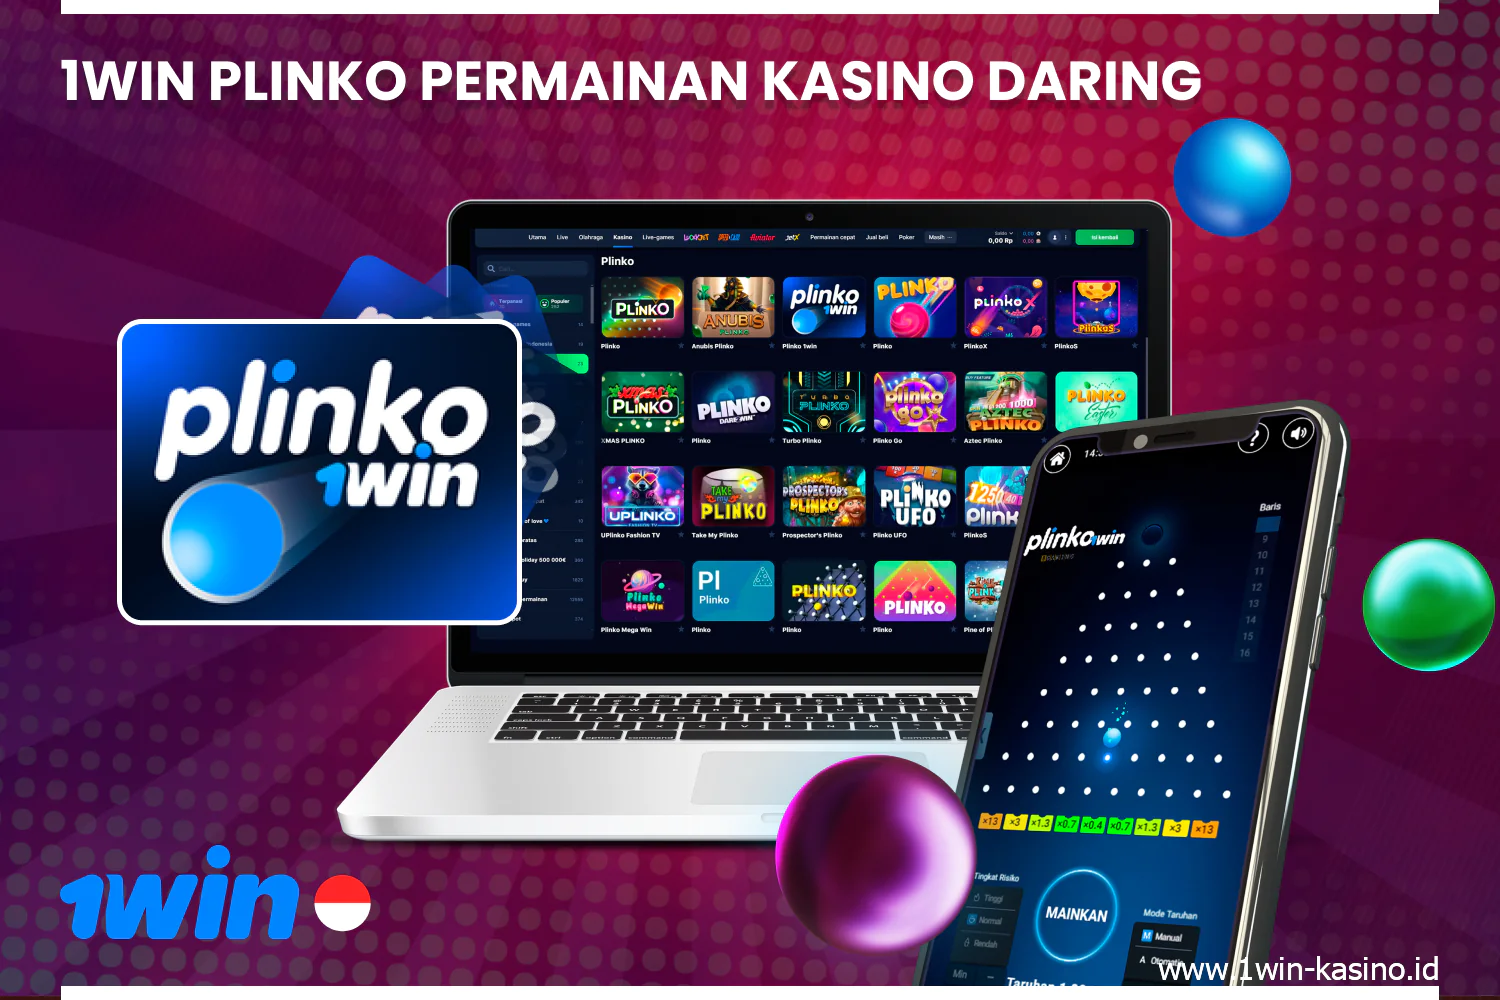 Permainan Plinko merupakan permainan populer di 1win casino di Indonesia